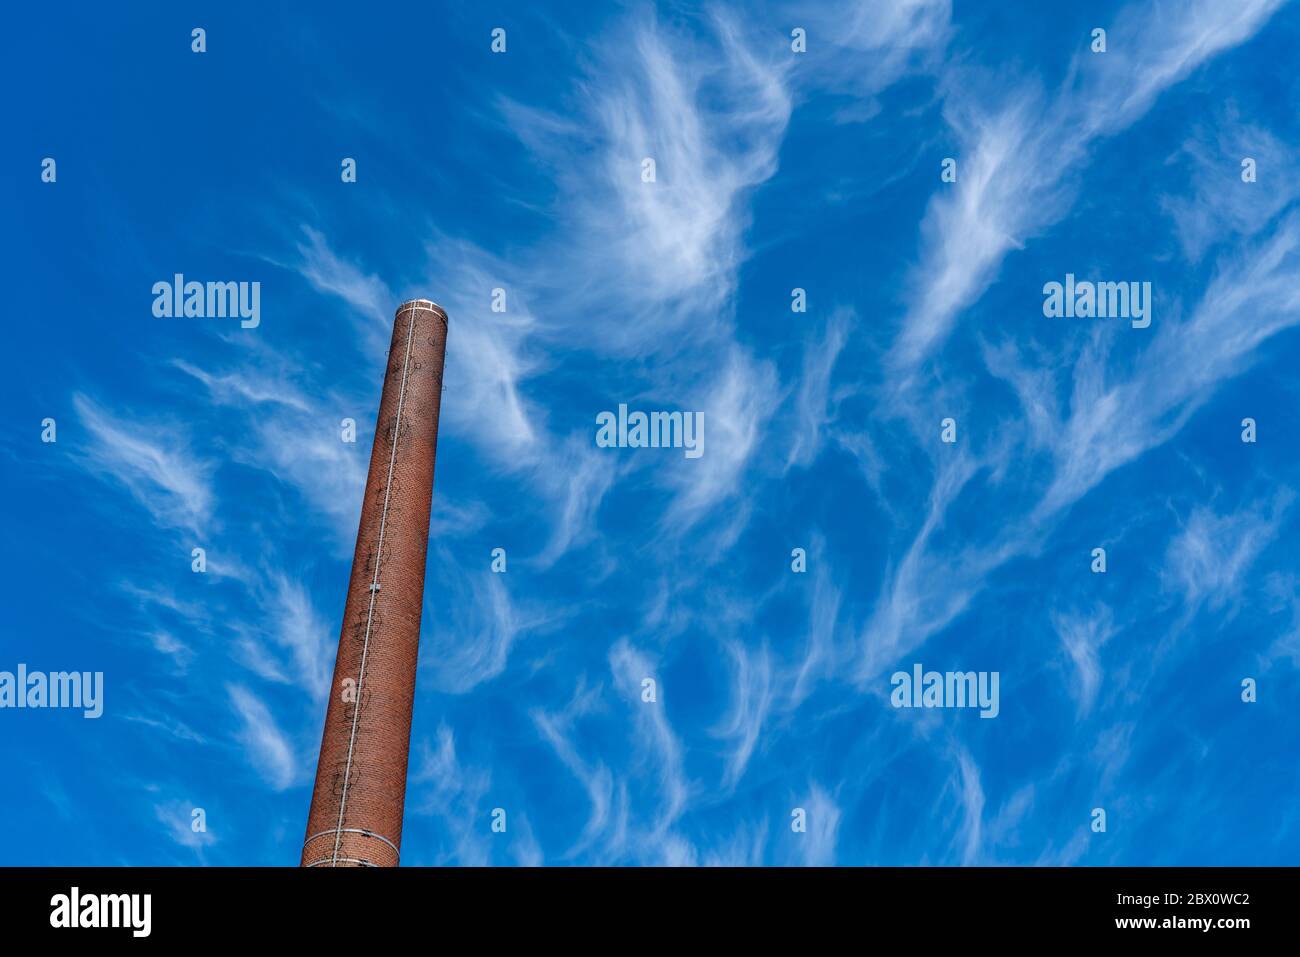 Ciel bleu avec des nuages cirrus, nuages de glace en filigrane à haute altitude, annonciateurs de temps plus chaud, cheminées, émissions Banque D'Images